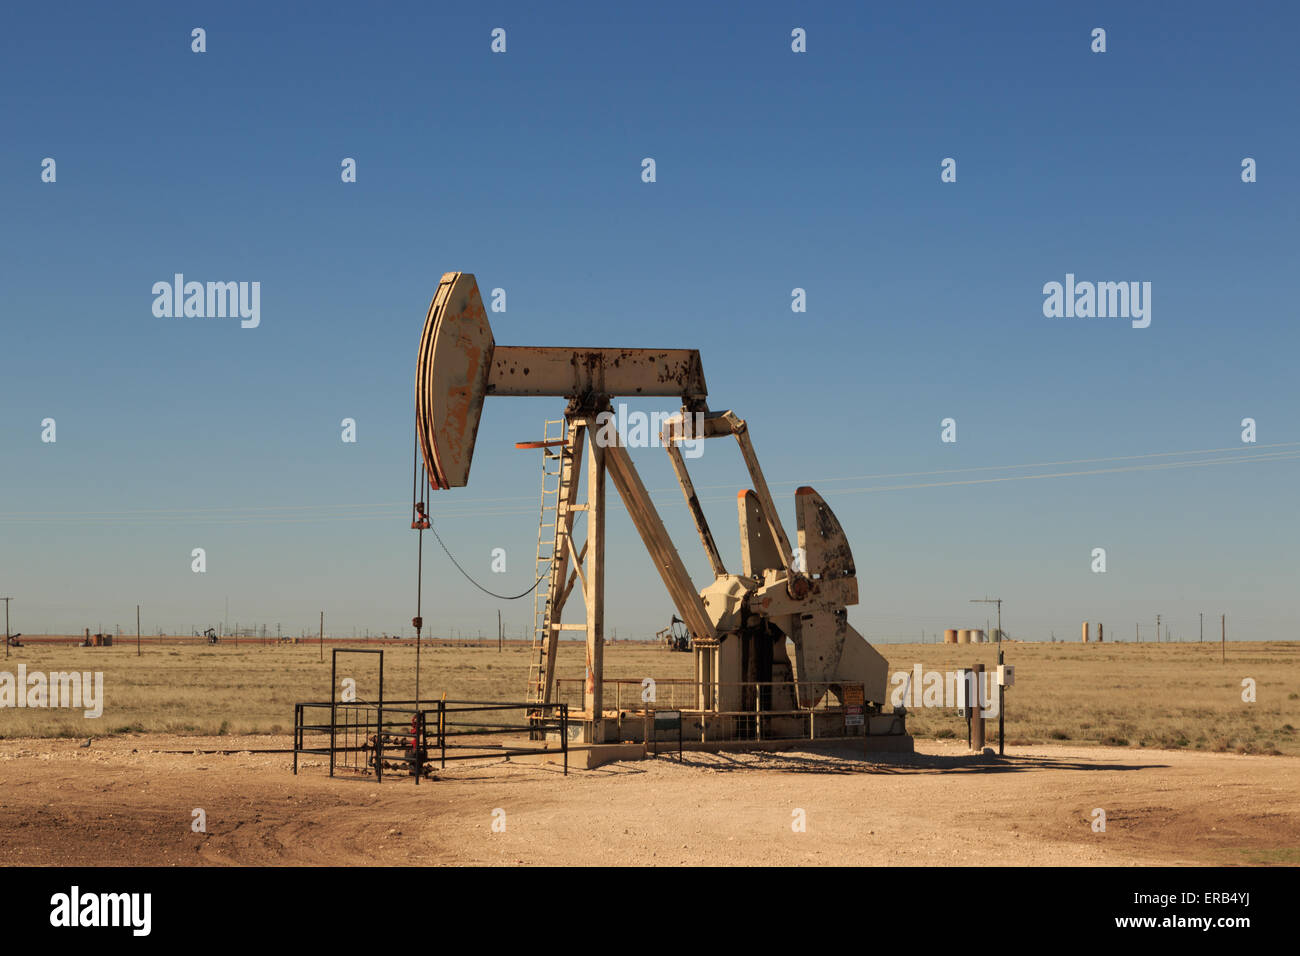 Öl-Pumpe in Einem Wüsten-Ölfeld in Texas Stockfoto - Bild von